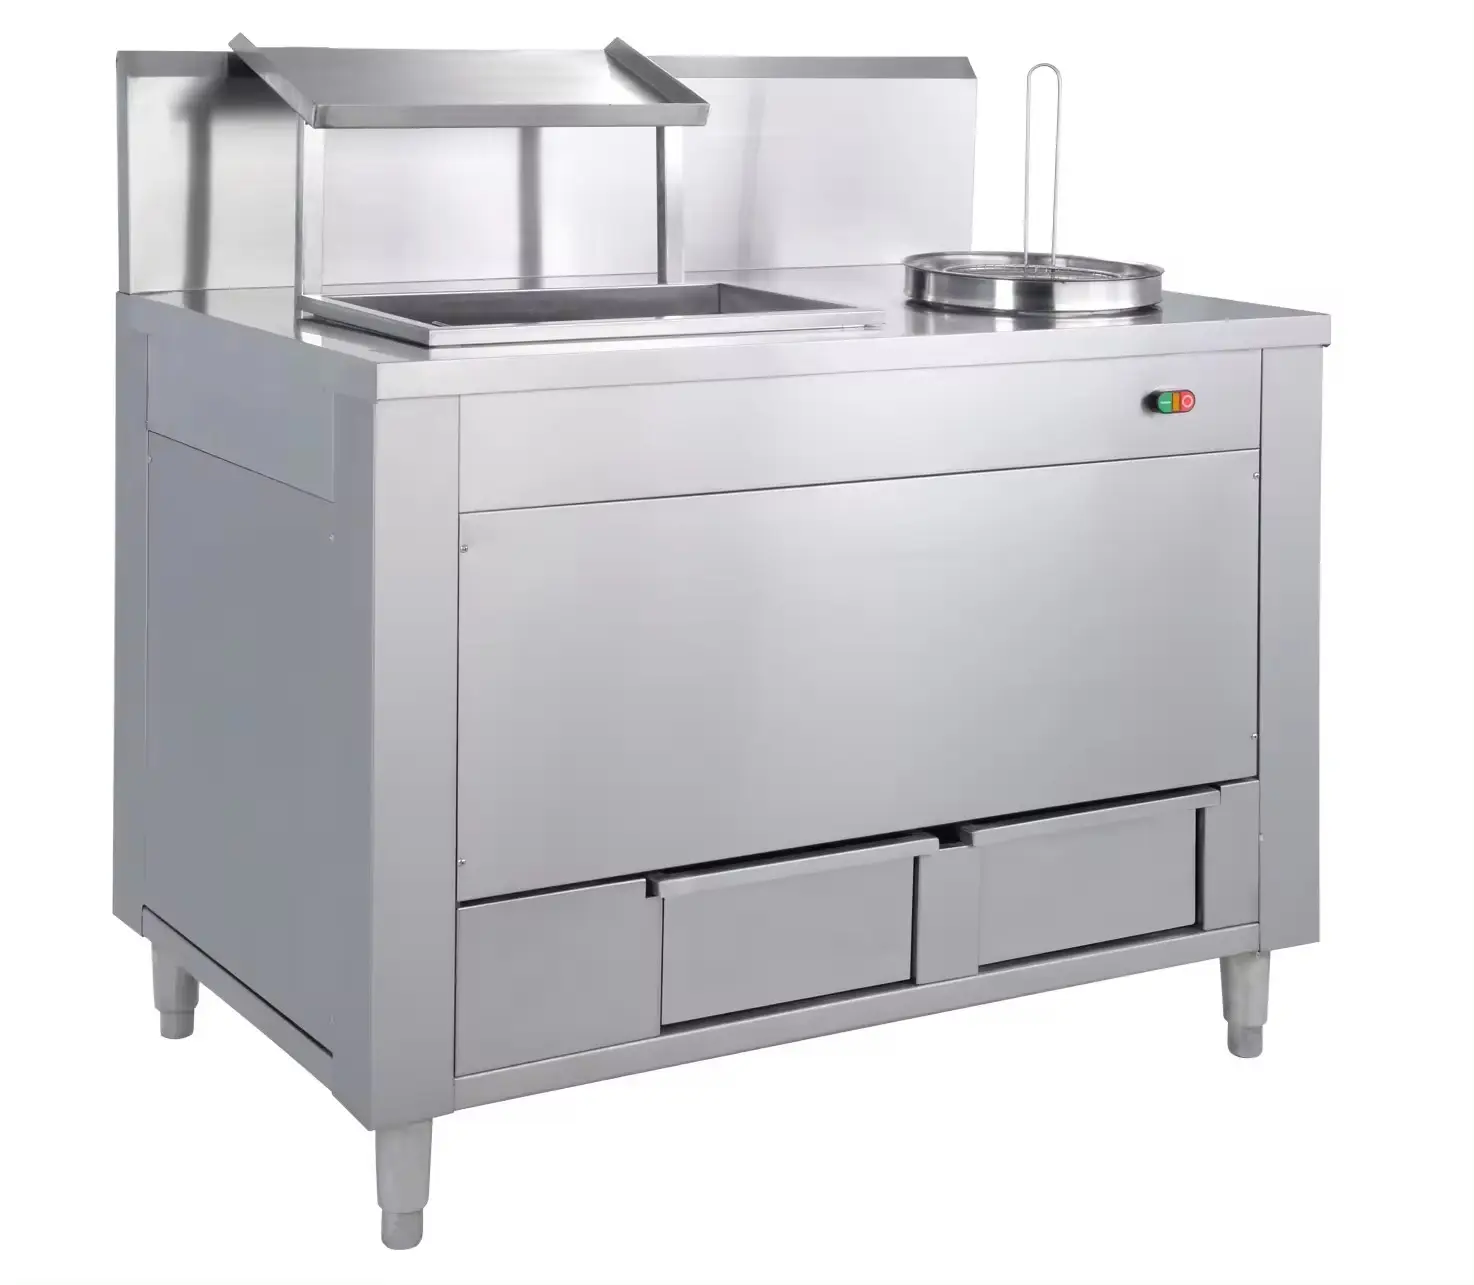 ماكينة خبز الدجاج المستعملة لمطعم الأطعمة السريعة GW-2400 بقوة 0.4 كيلو واط للبيع من مصنع CNIX-Guanxing